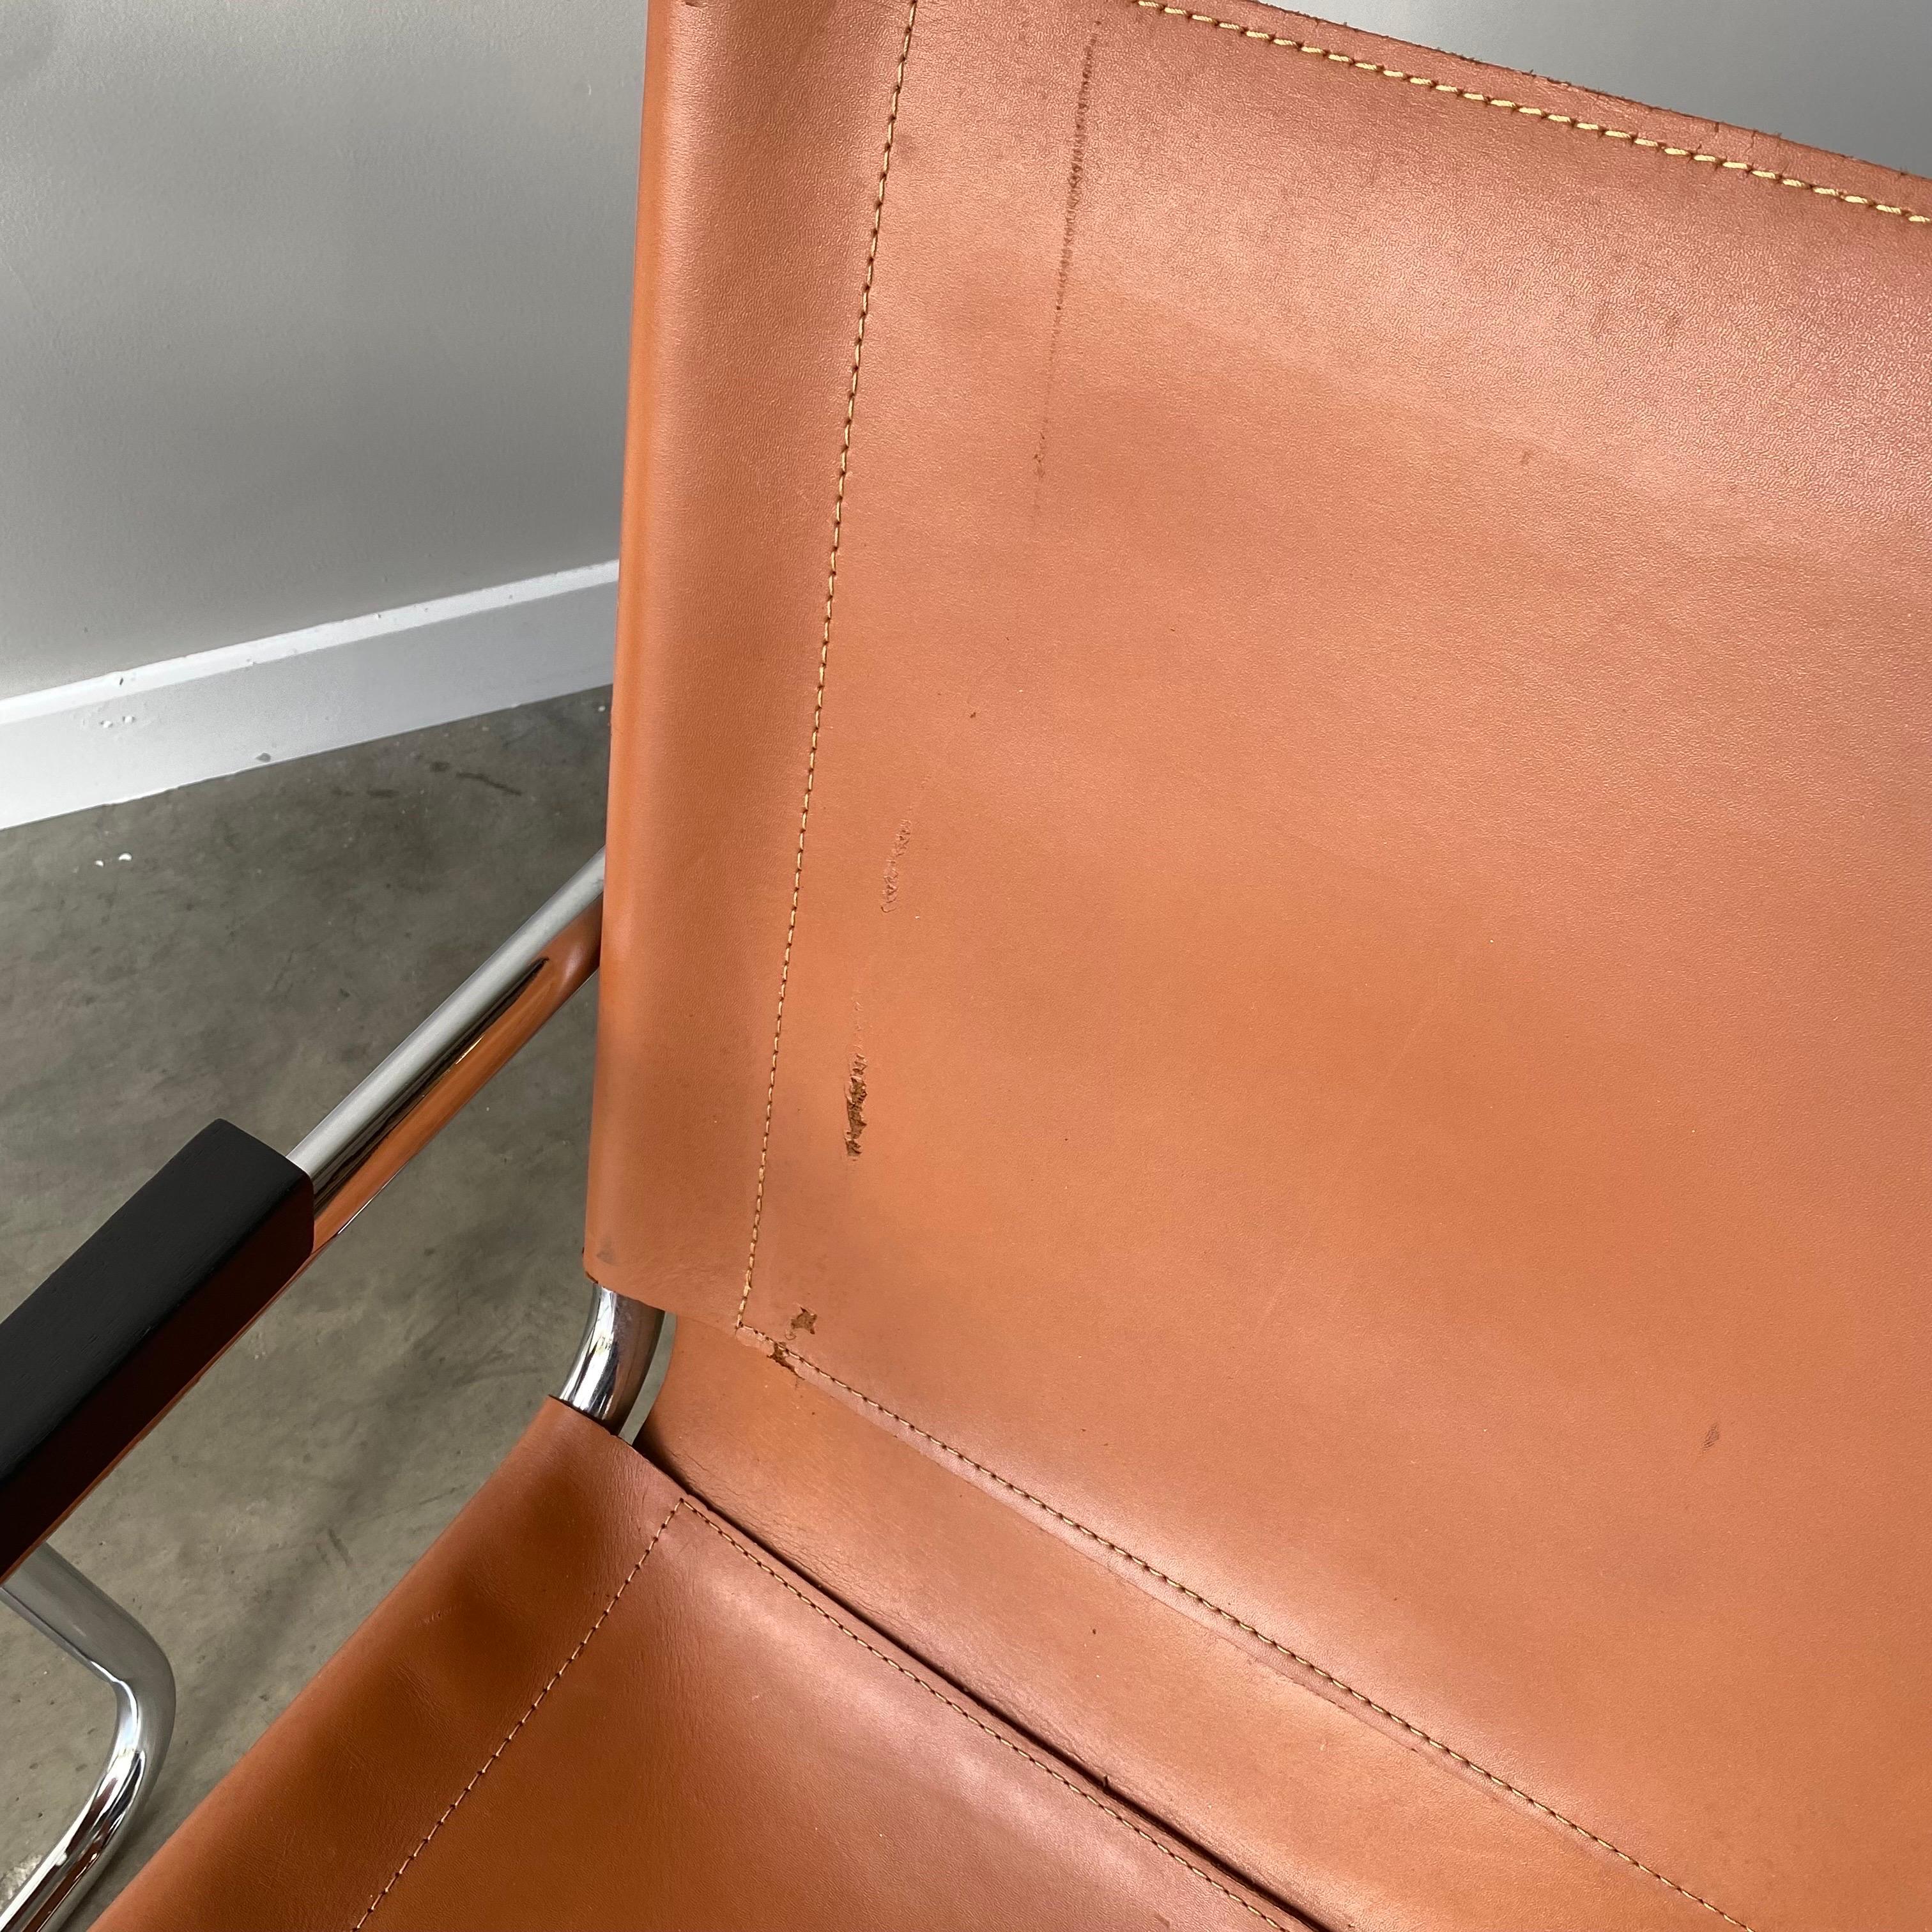 Ein wundervolles Paar Sessel im Bauhaus-Stil nach dem Vorbild von Marcel Breuer.  Diese sind dem Thonet B-35 Design nachempfunden, mit kleinen Unterschieden.  Diese sind eine große Qualität Vintage Paar in sehr guten gebrauchten Zustand.